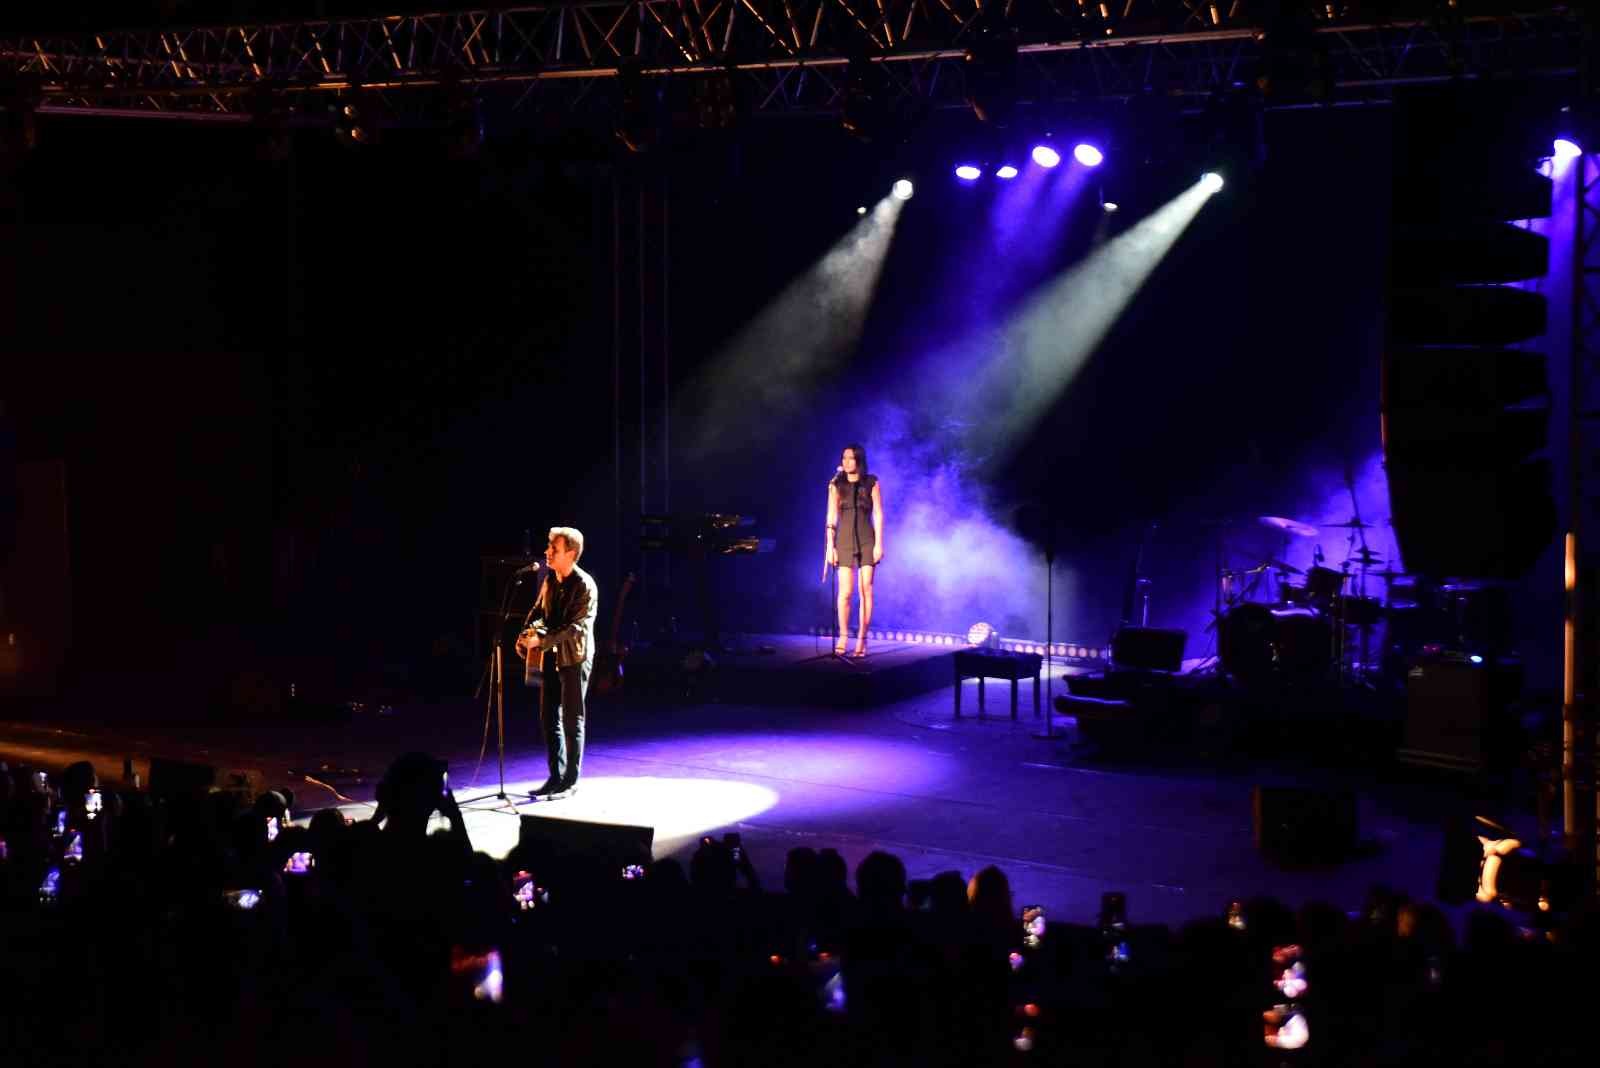 Rock müziğinin sevilen ismi Teoman, Bursa Açıkhava sahnesinde unutulmaz bir geceye imza attı. Sahnesinde ‘Gönülçelen’ şarkısına ilham kaynağı ...